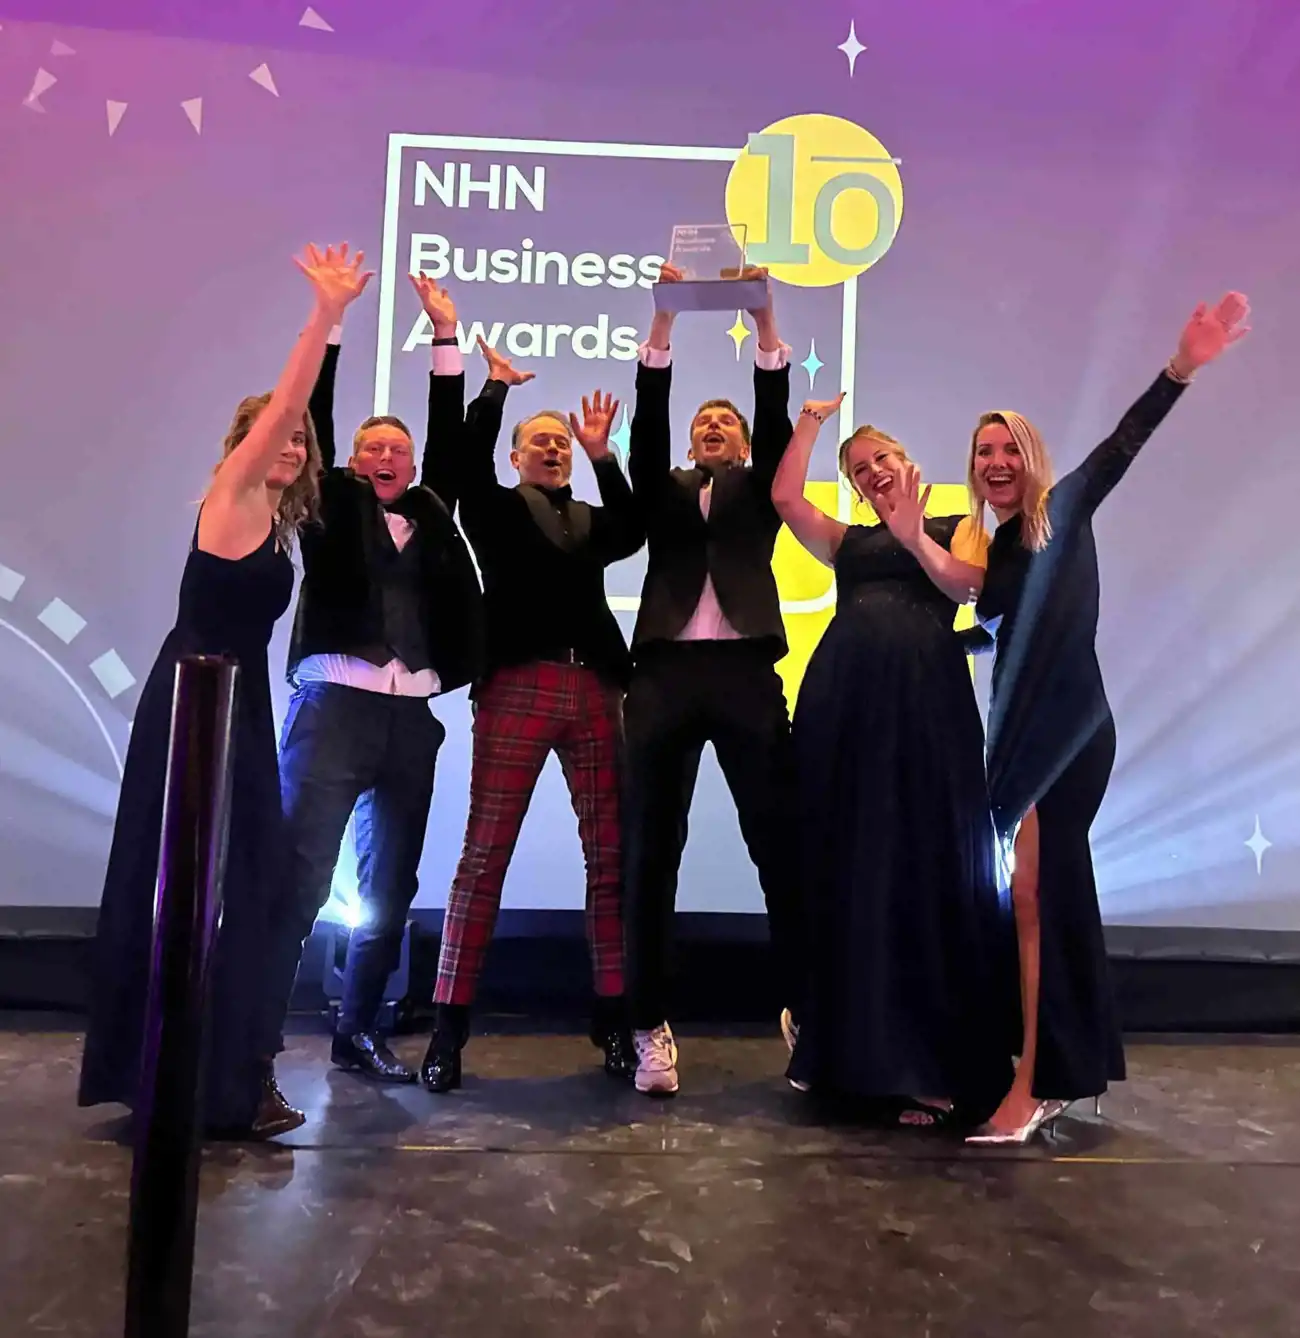 Trots op Onze Overwinning bij de NHN Business Awards 